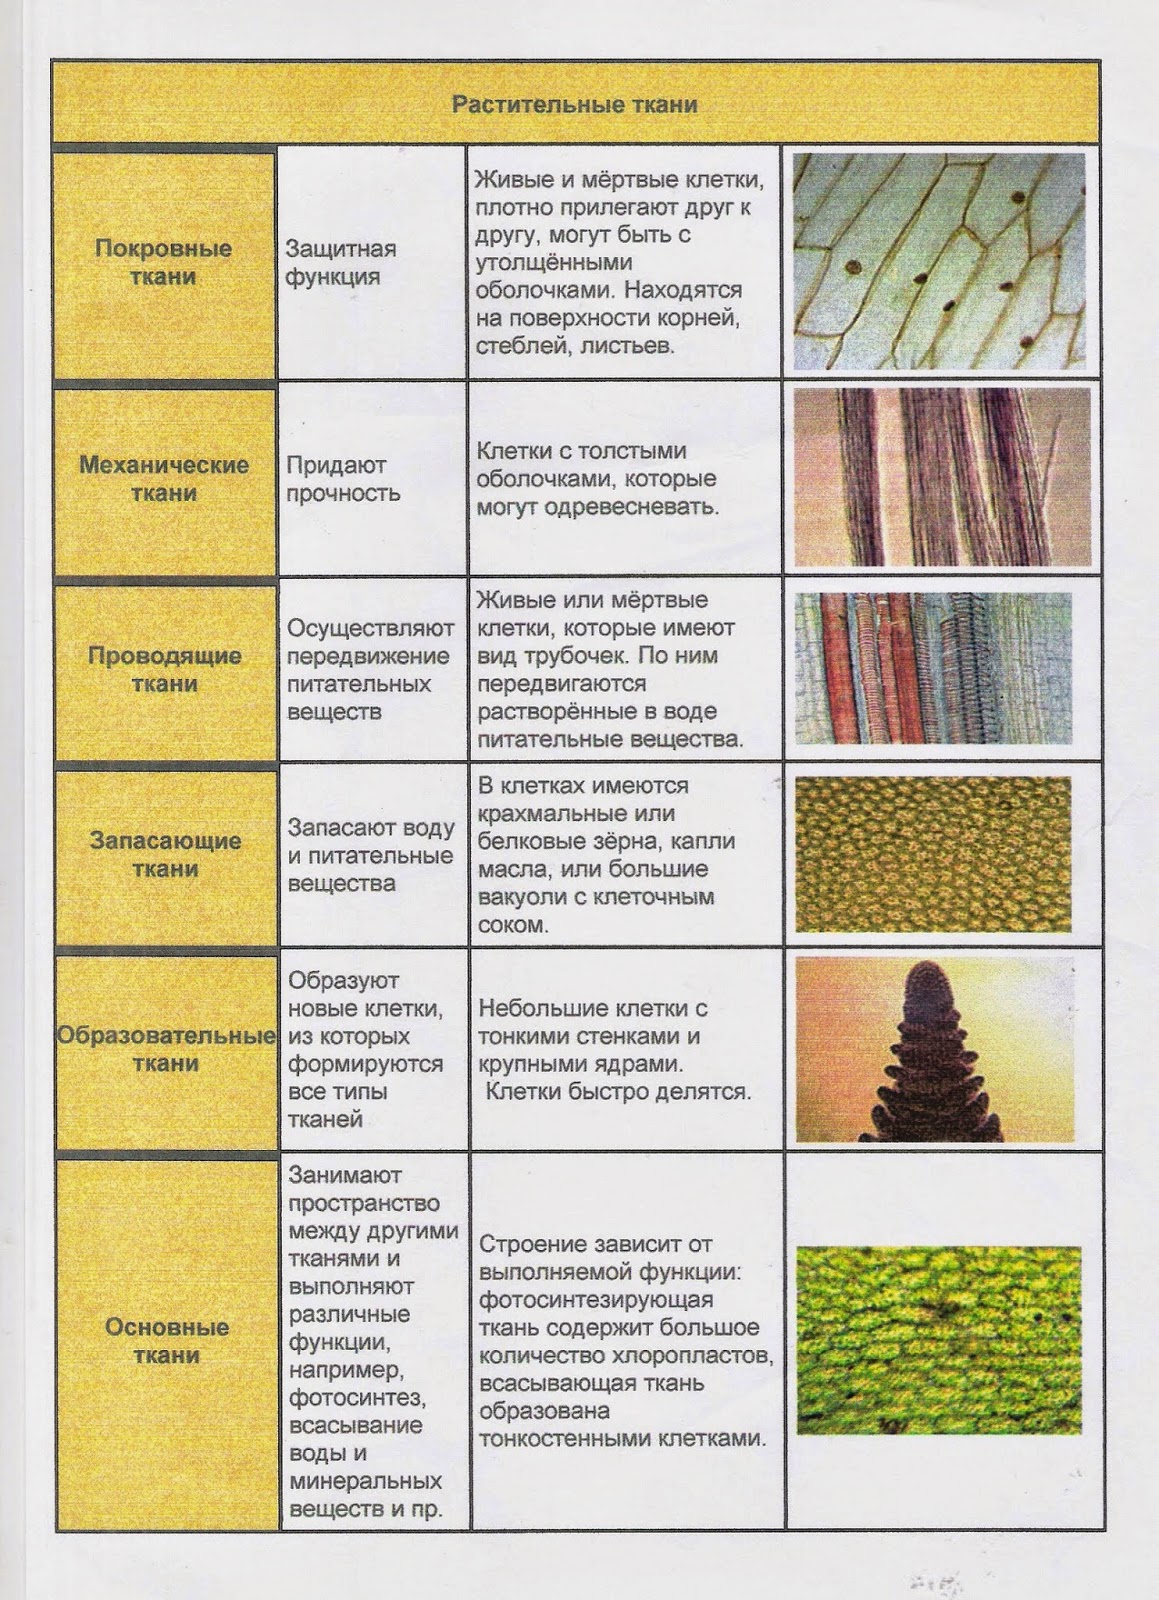 Где в растительном организме находятся образовательные ткани. Таблица растительные ткани 6 класс биология. Типы тканей растений 6 класс биология таблица. Виды тканей растений таблица биология 6 класс. Виды тканей растений 5 класс биология таблица.